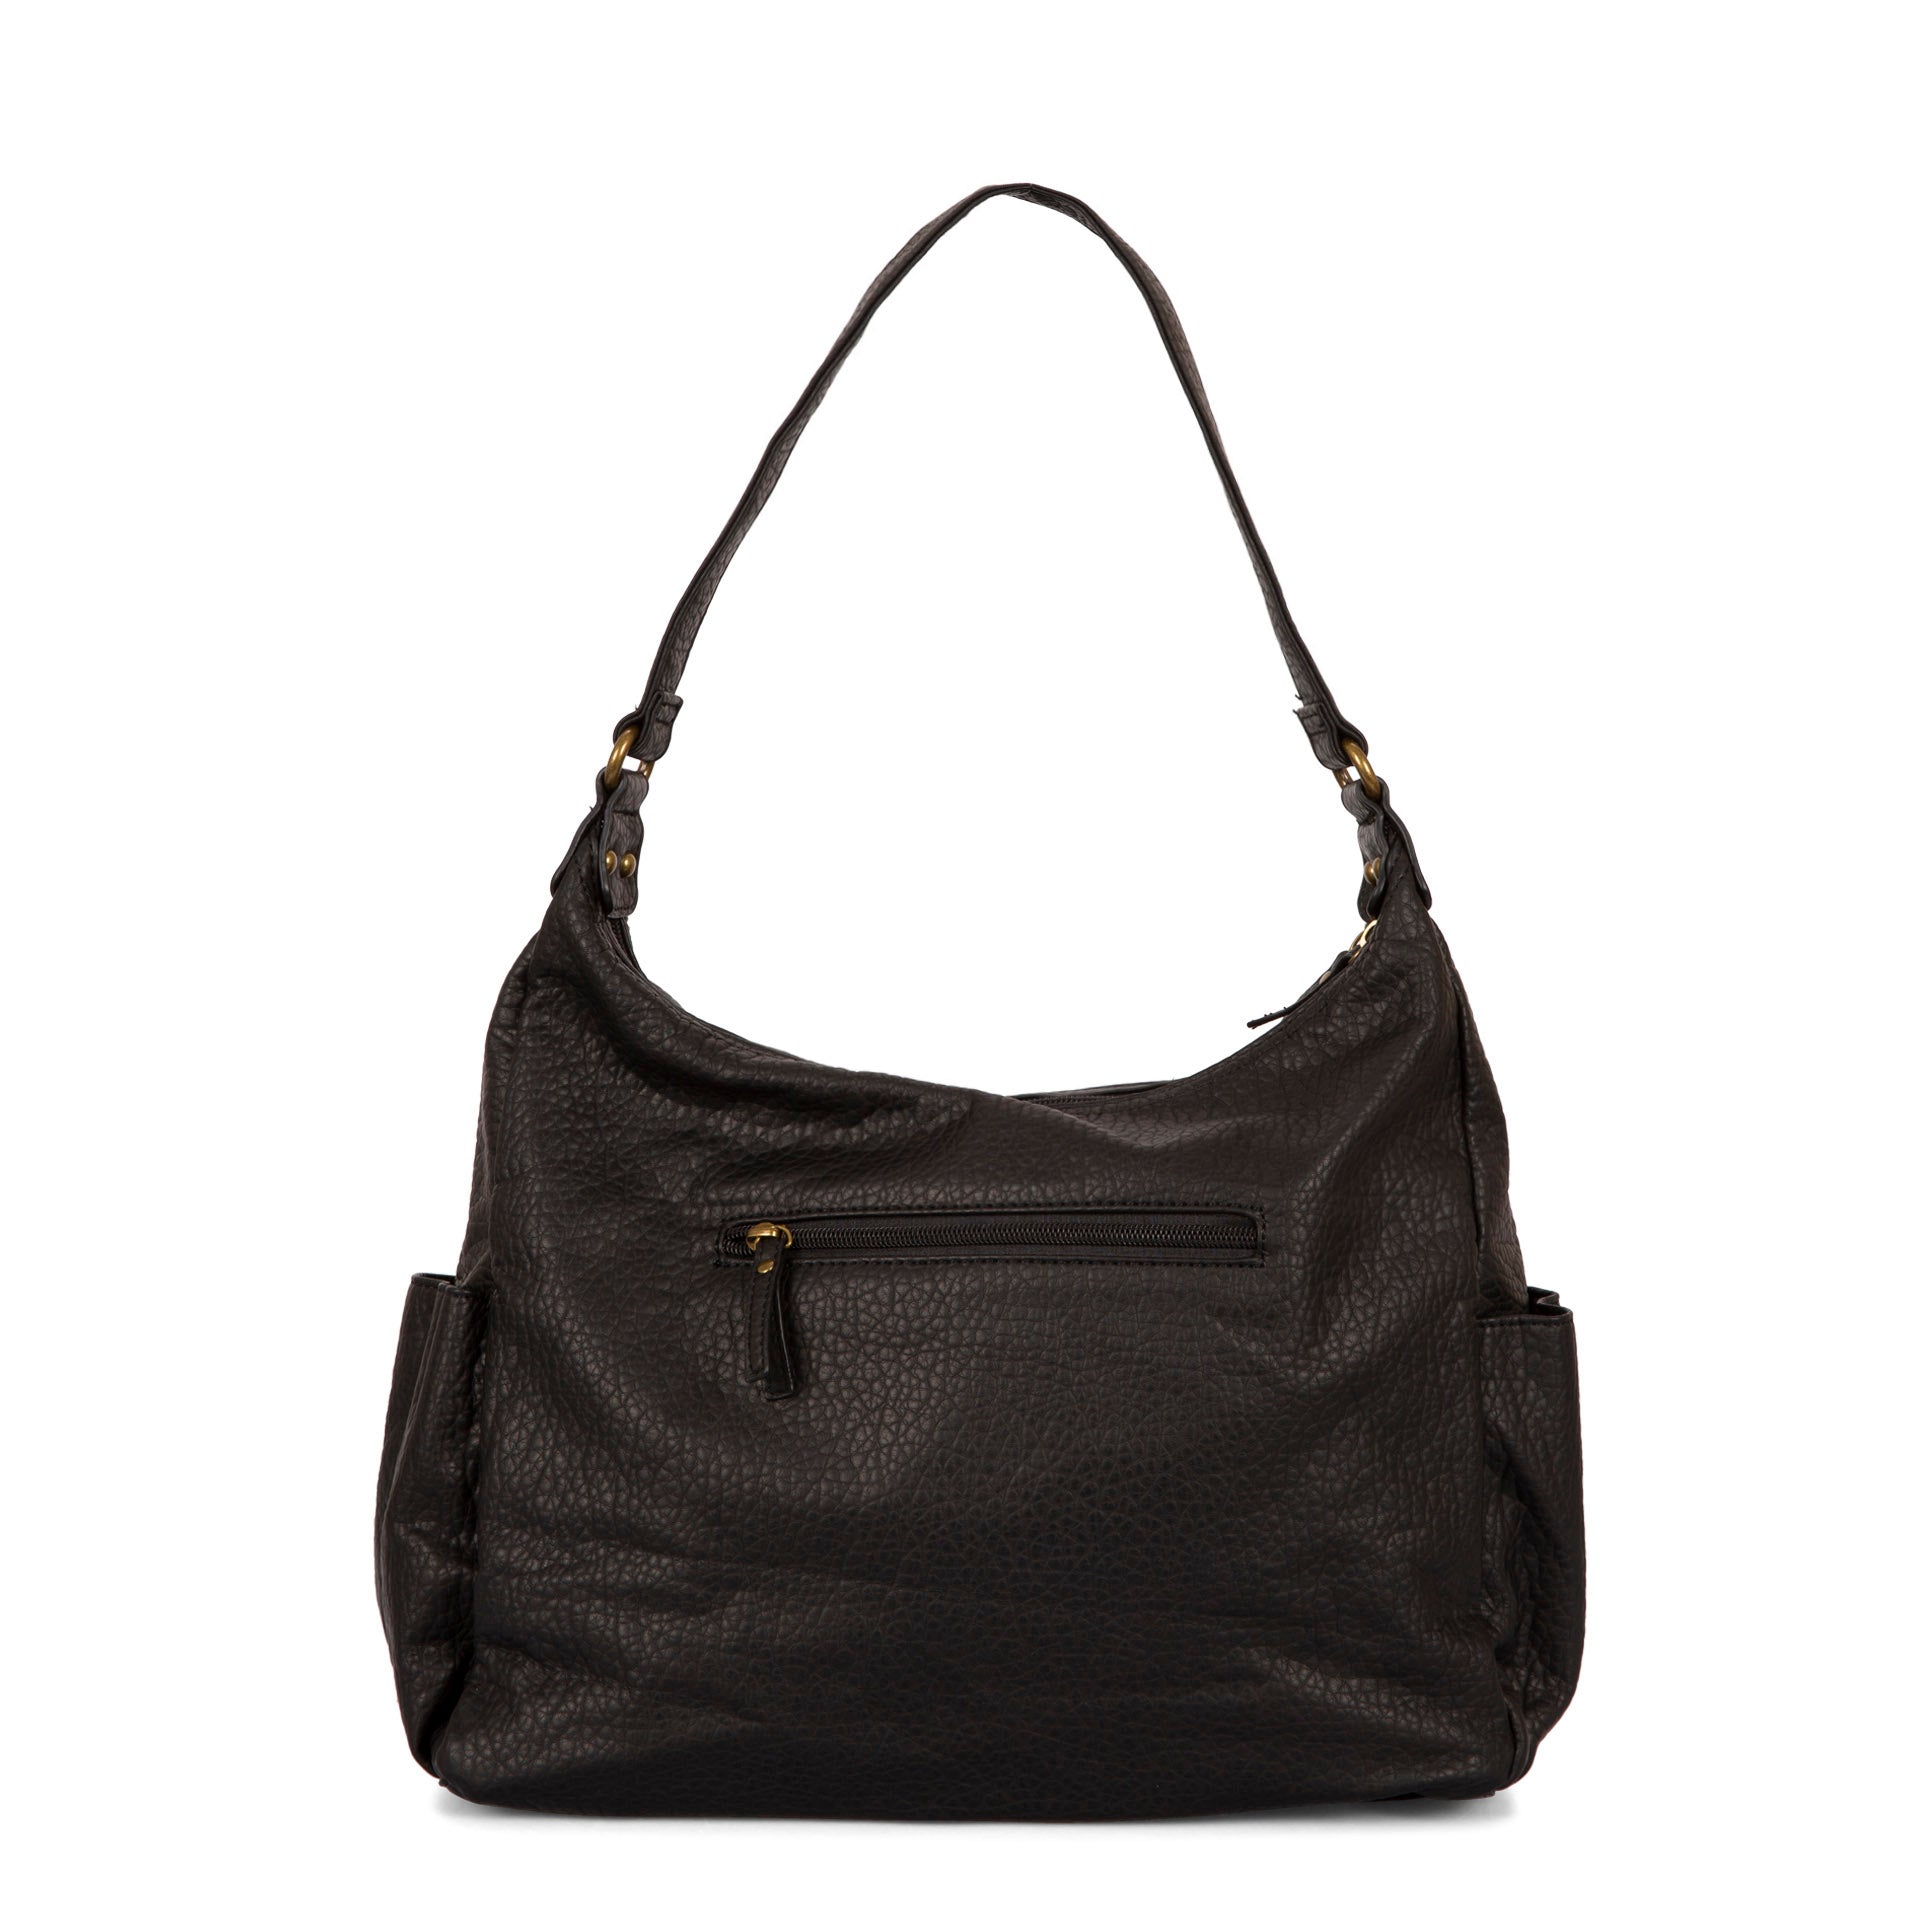 Bueno Black Shoulder or Crossbody Bag With Adjustable Strap Retro Vintage Handbag  Purse - Etsy